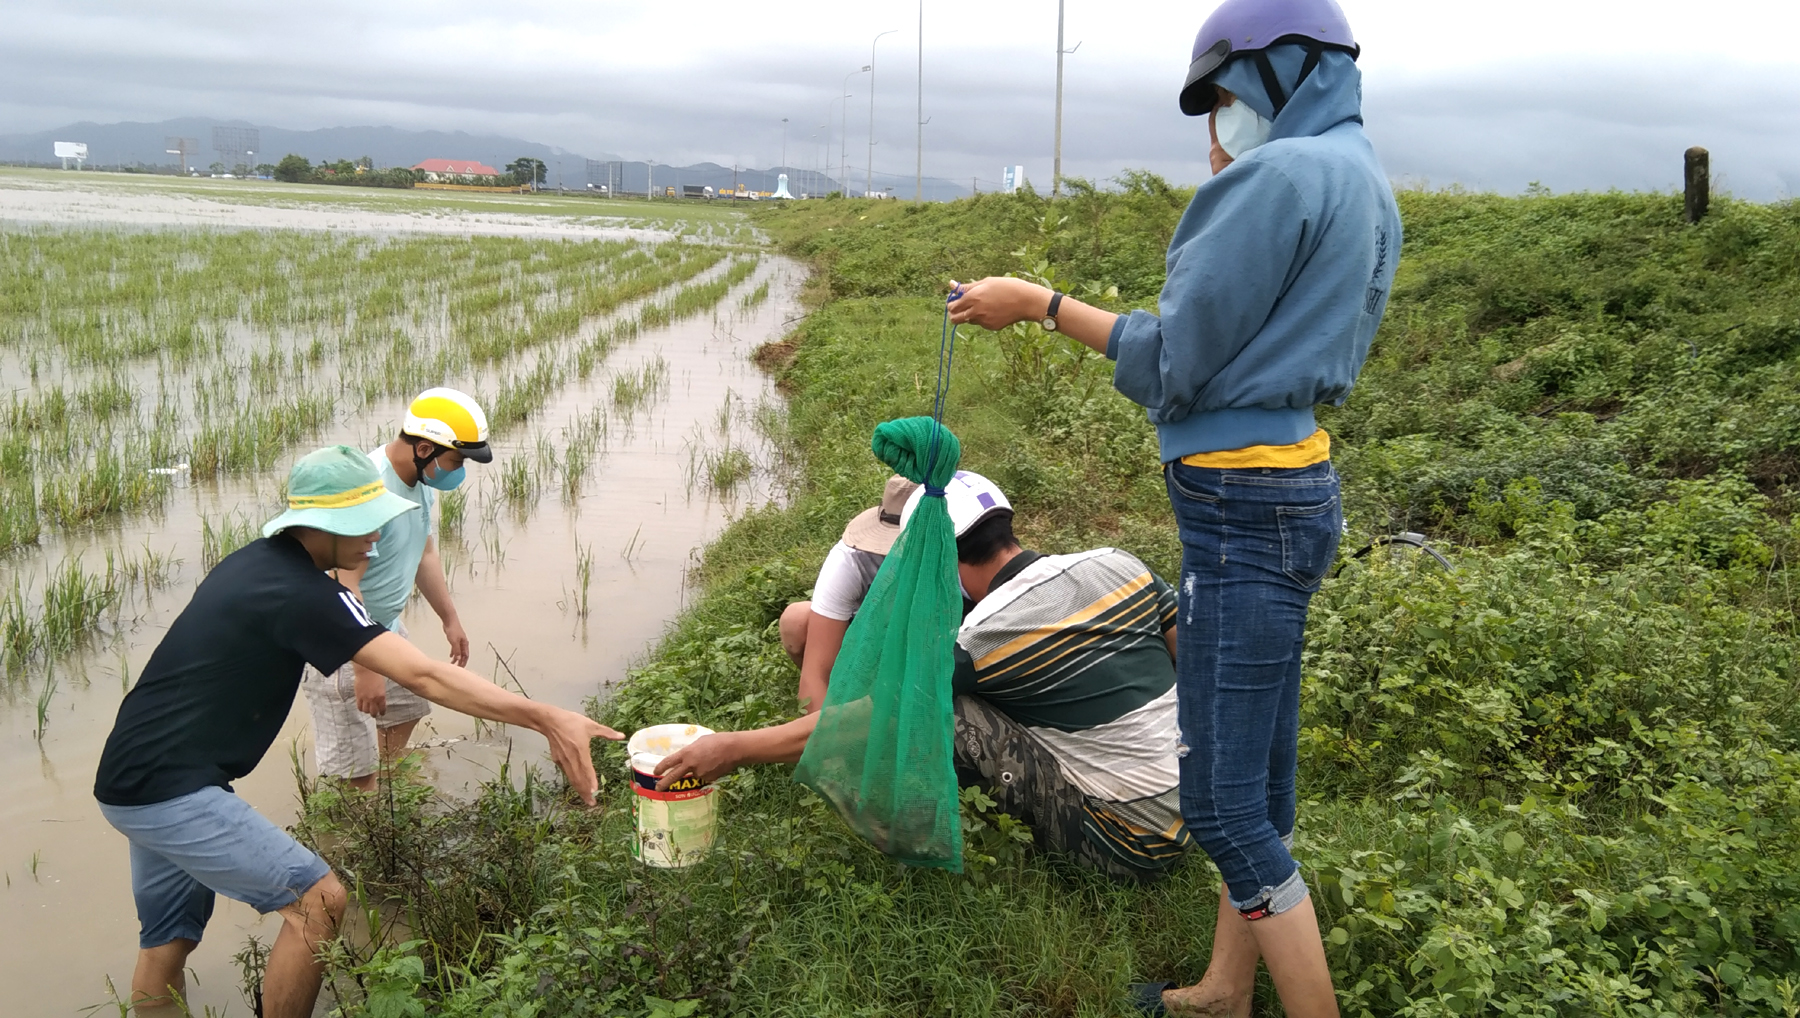 Đổ nước vào hang bắt chuột trên cánh đồng TP Tuy Hòa. Ảnh: Mạnh Hoài Nam